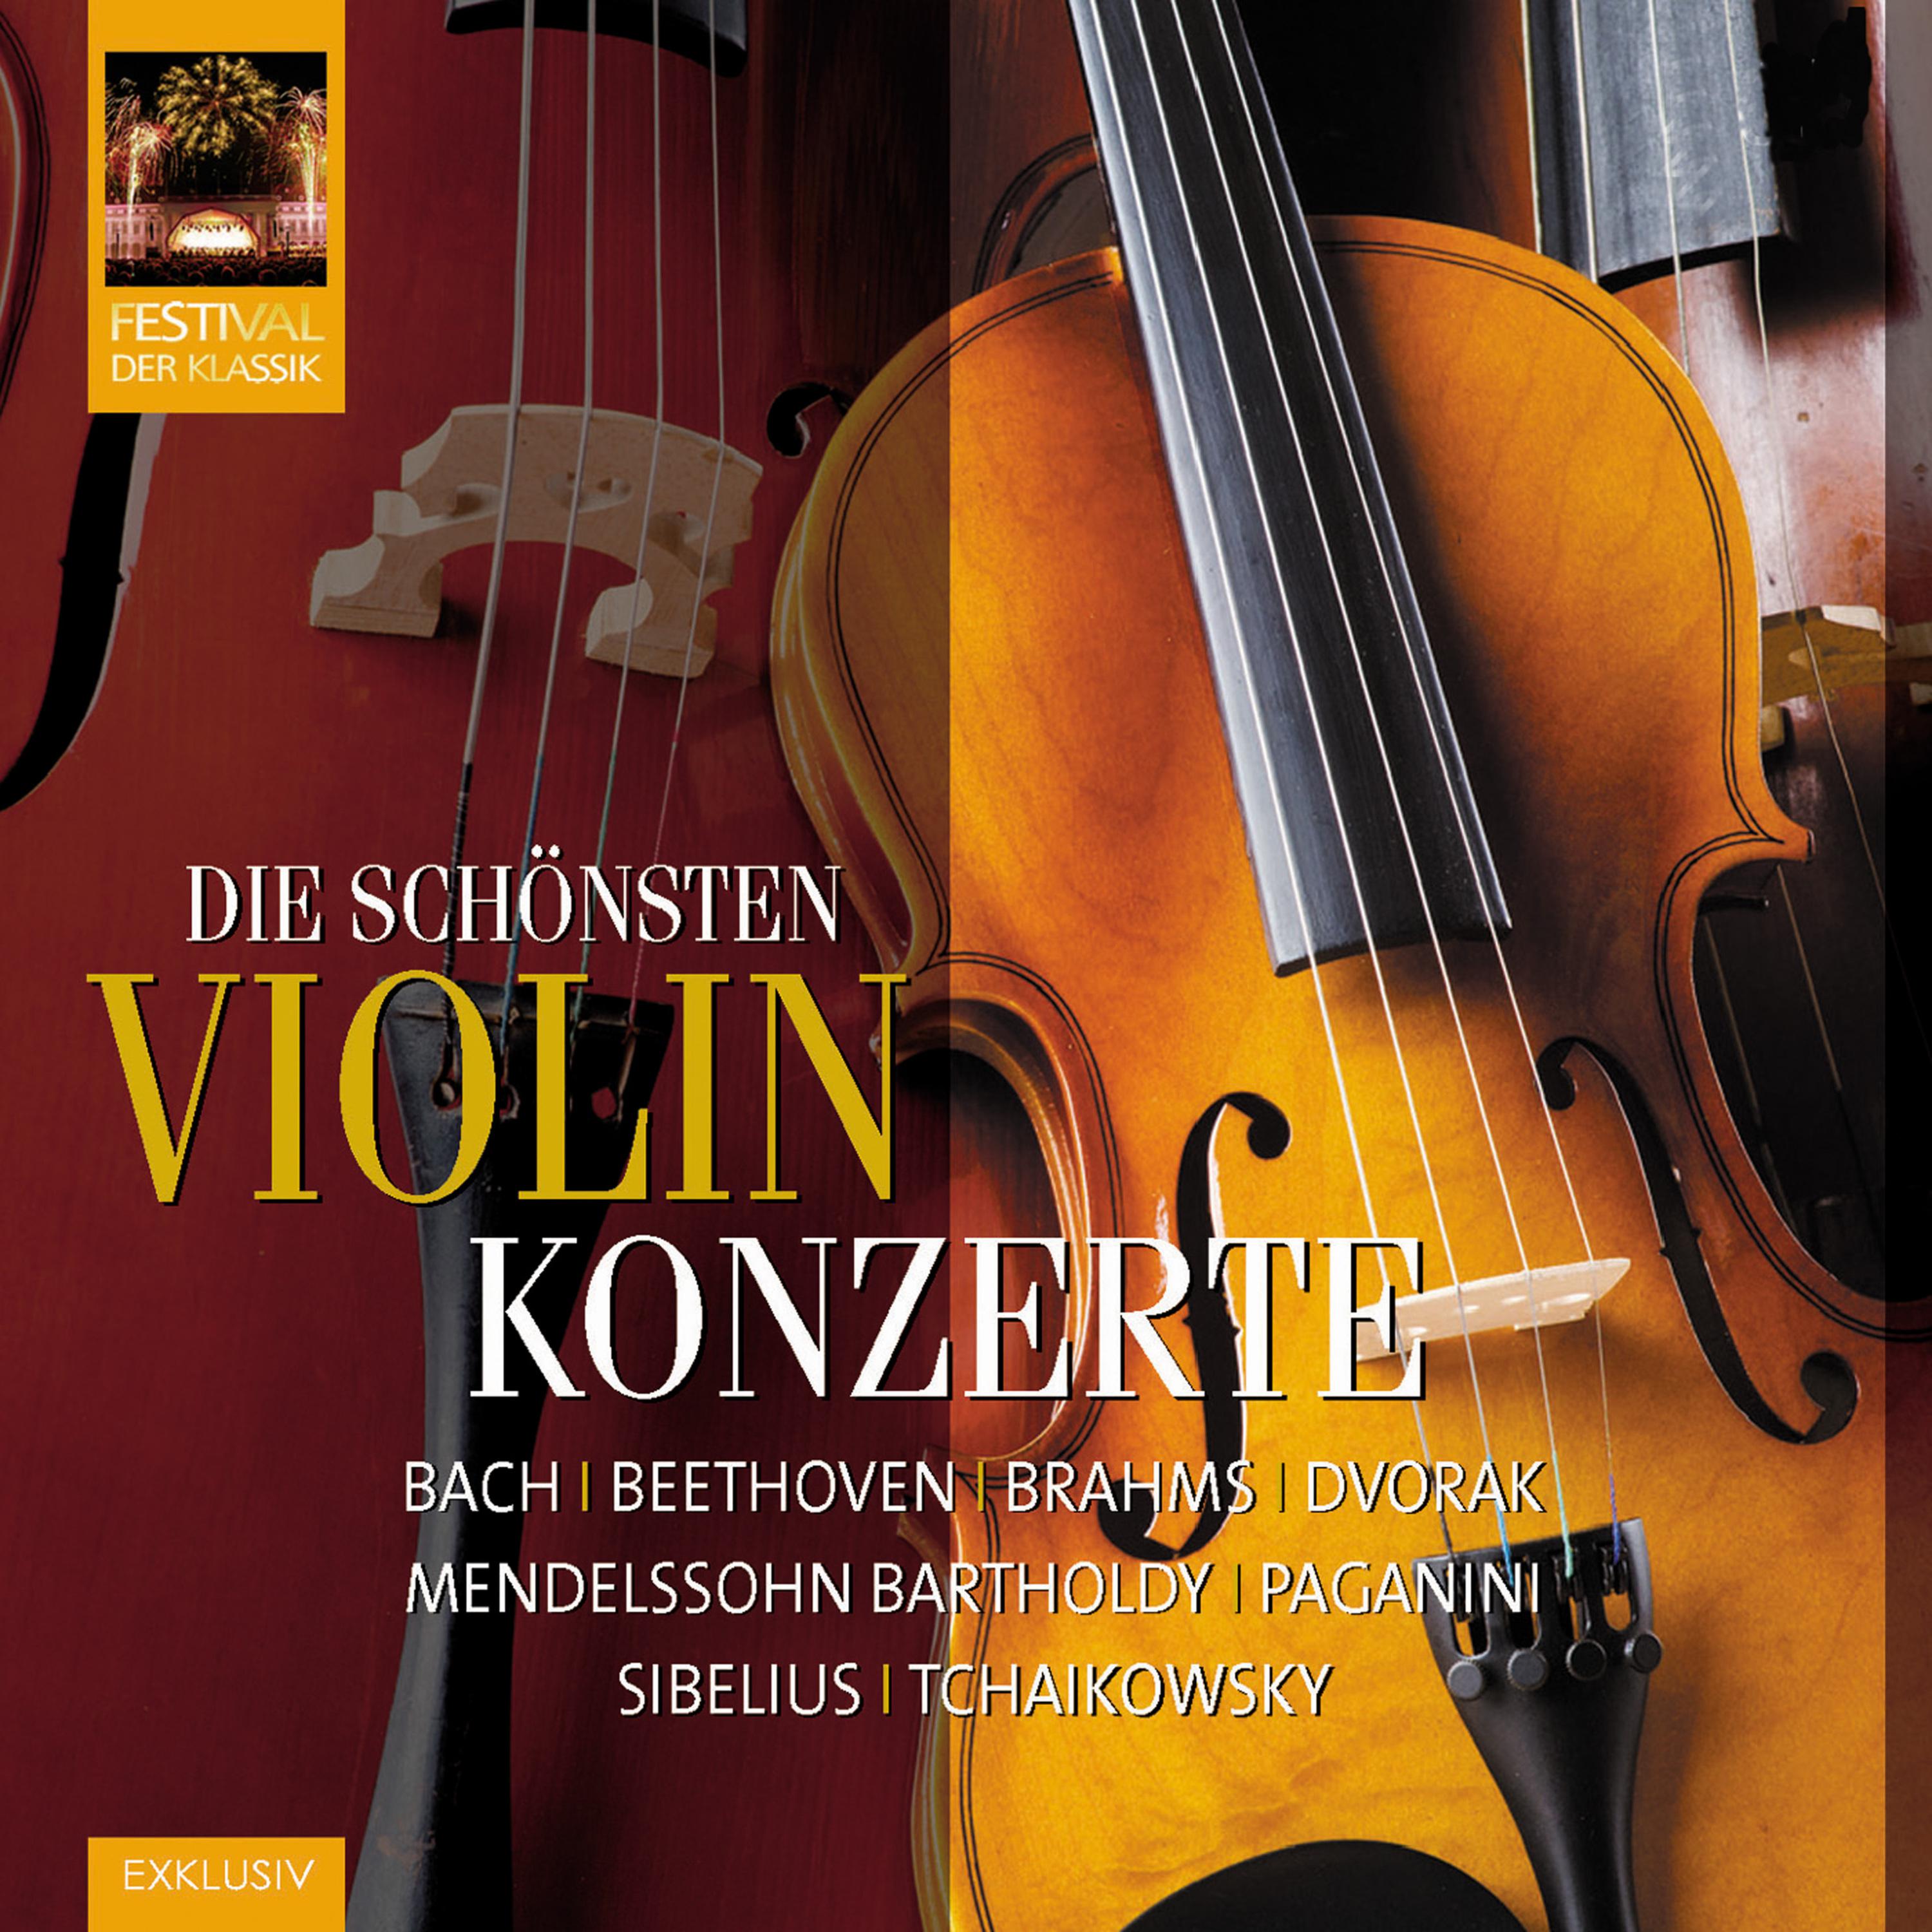 Violinromanze No. 2 fü r Violine und Orchester in F Major, Op. 50